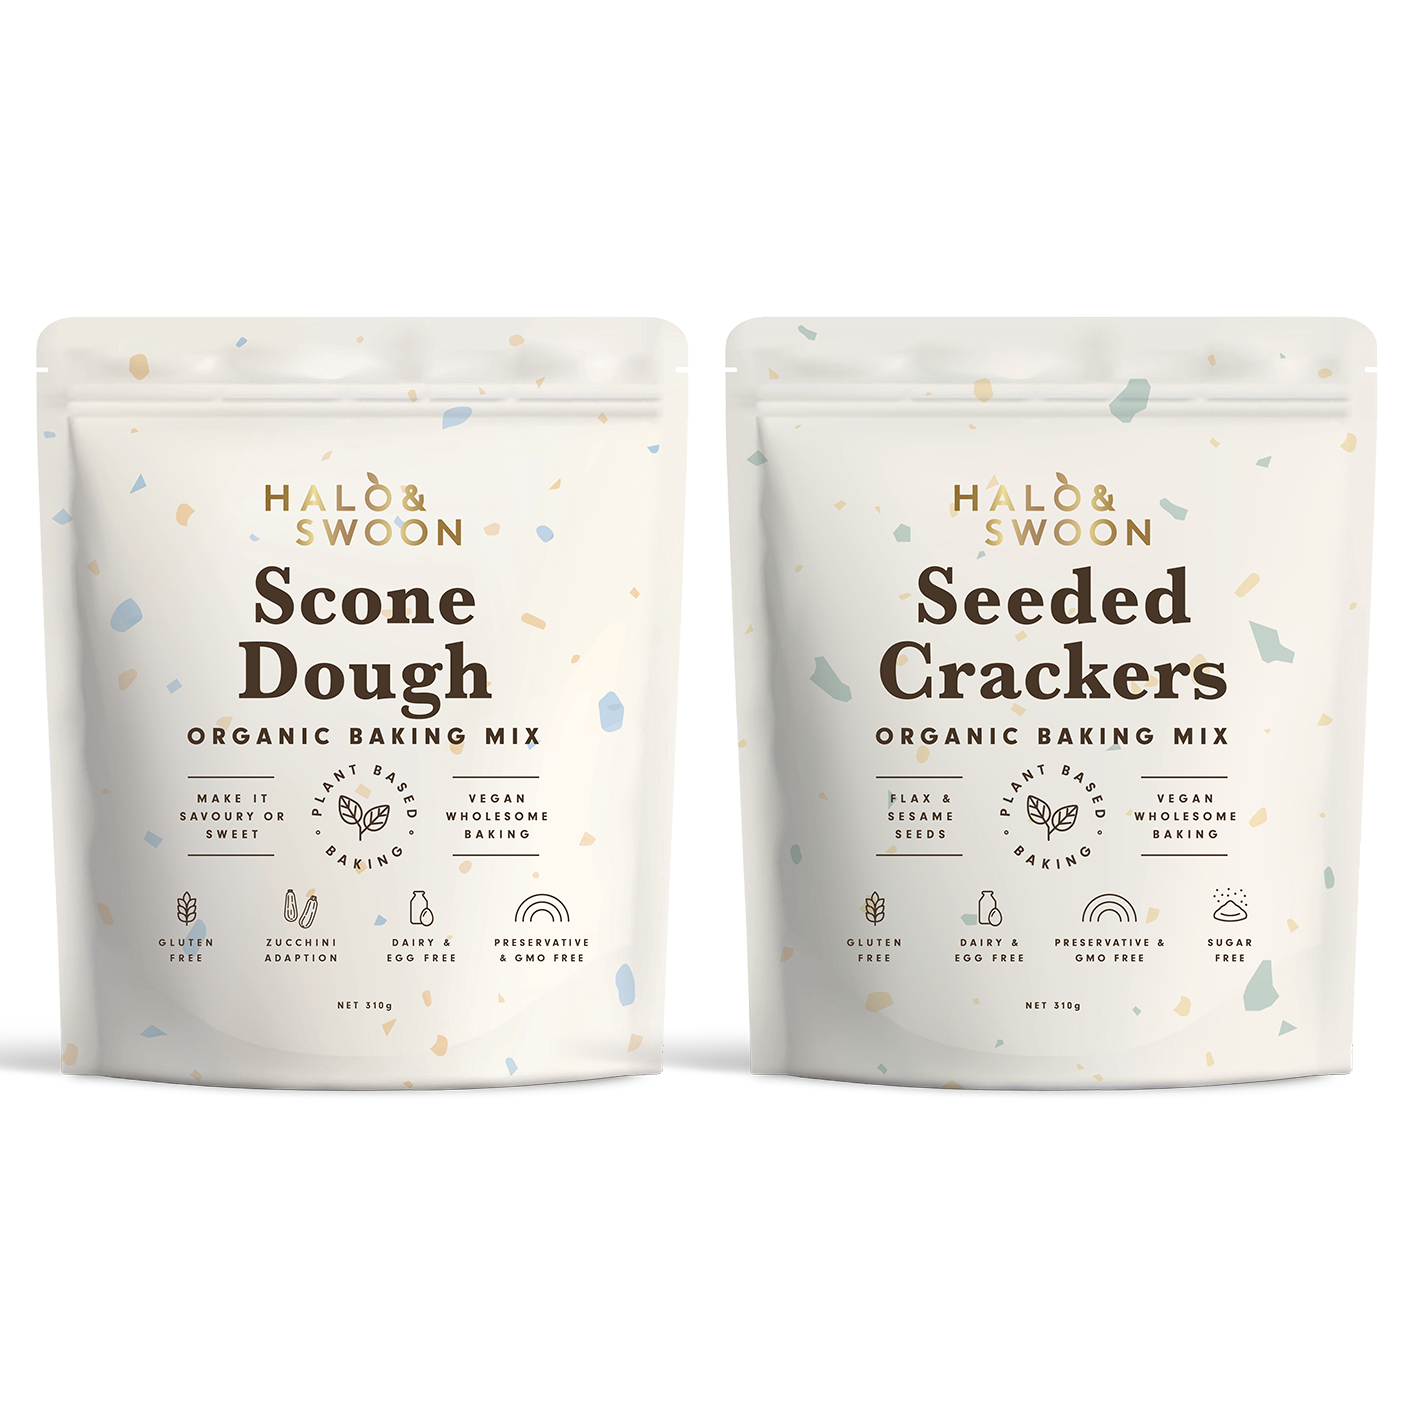 Halo & Swoon Savoury Baking Bundle - 2 organic, vegan, gluten-free savoury baking mixes (Scone Dough & Seeded Crackers)